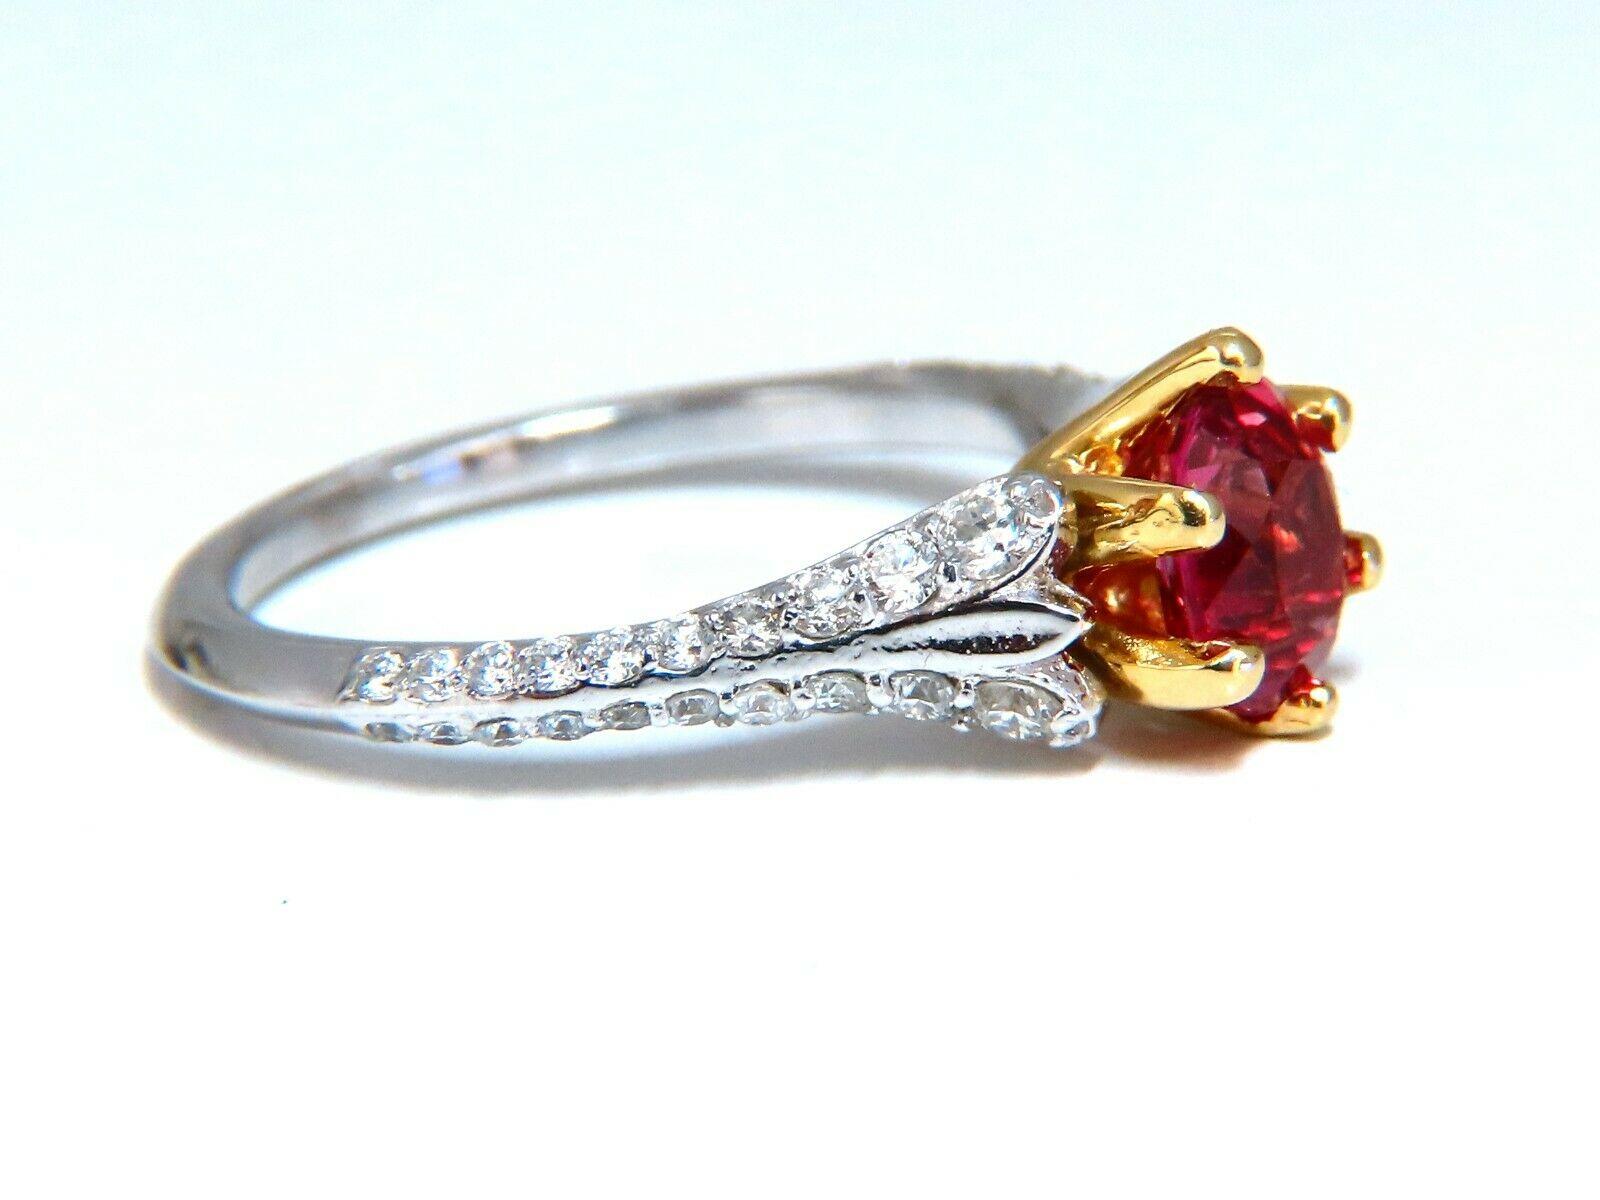 Red Prime Ruby Ring

1.07ct. Natürlicher AIGS zertifizierter Rubin Ring

Vollschliff oval brillant, Transparent

Gleichmäßiges Rosa, keine Hitze.



.40ct. Natürlich  Diamanten.

Rund- und Vollschnitte 

G-Farbe Vs-2 Klarheit.

  14kt. Weißgold

3.2